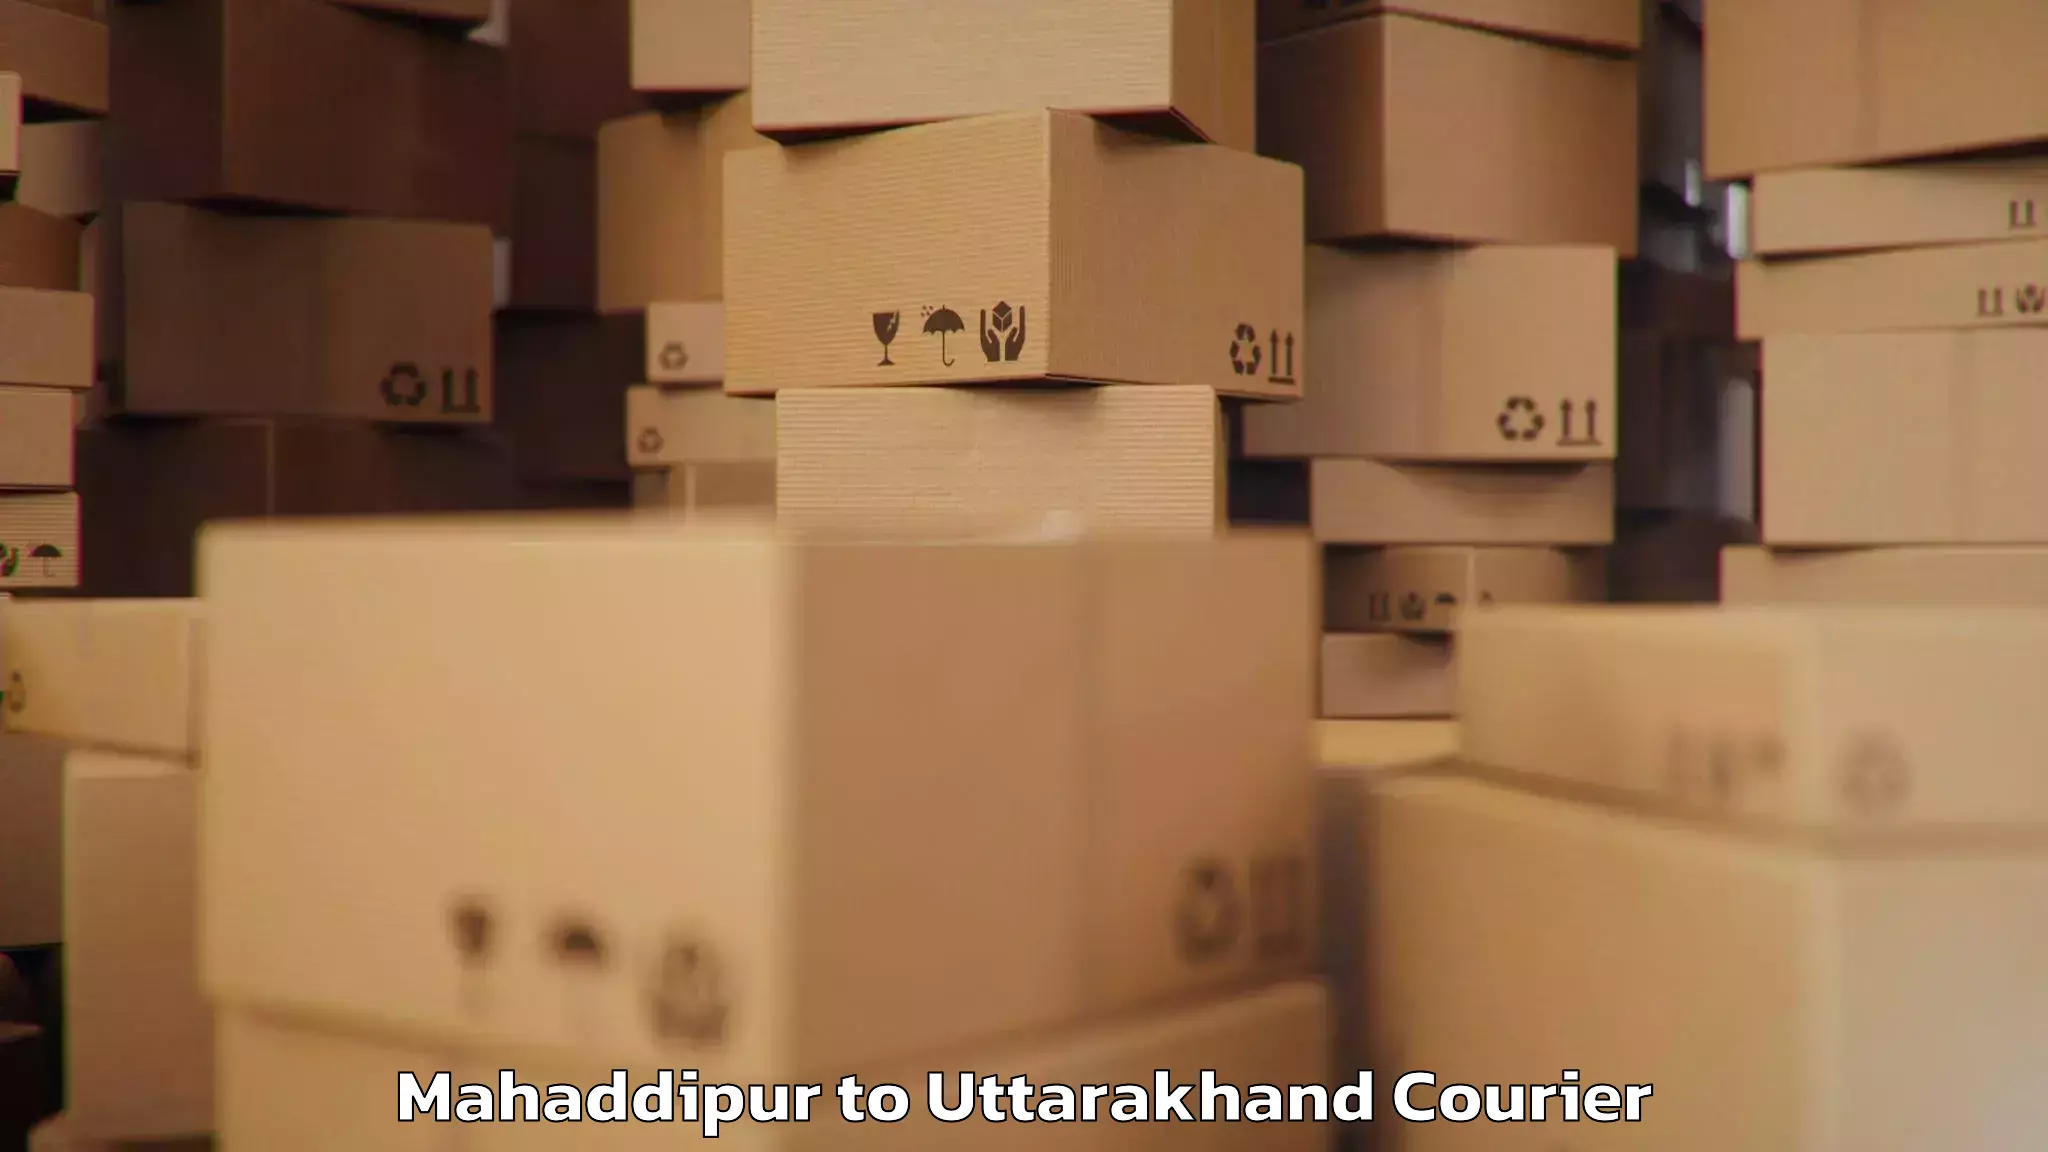 Luggage shipment logistics Mahaddipur to Paithani